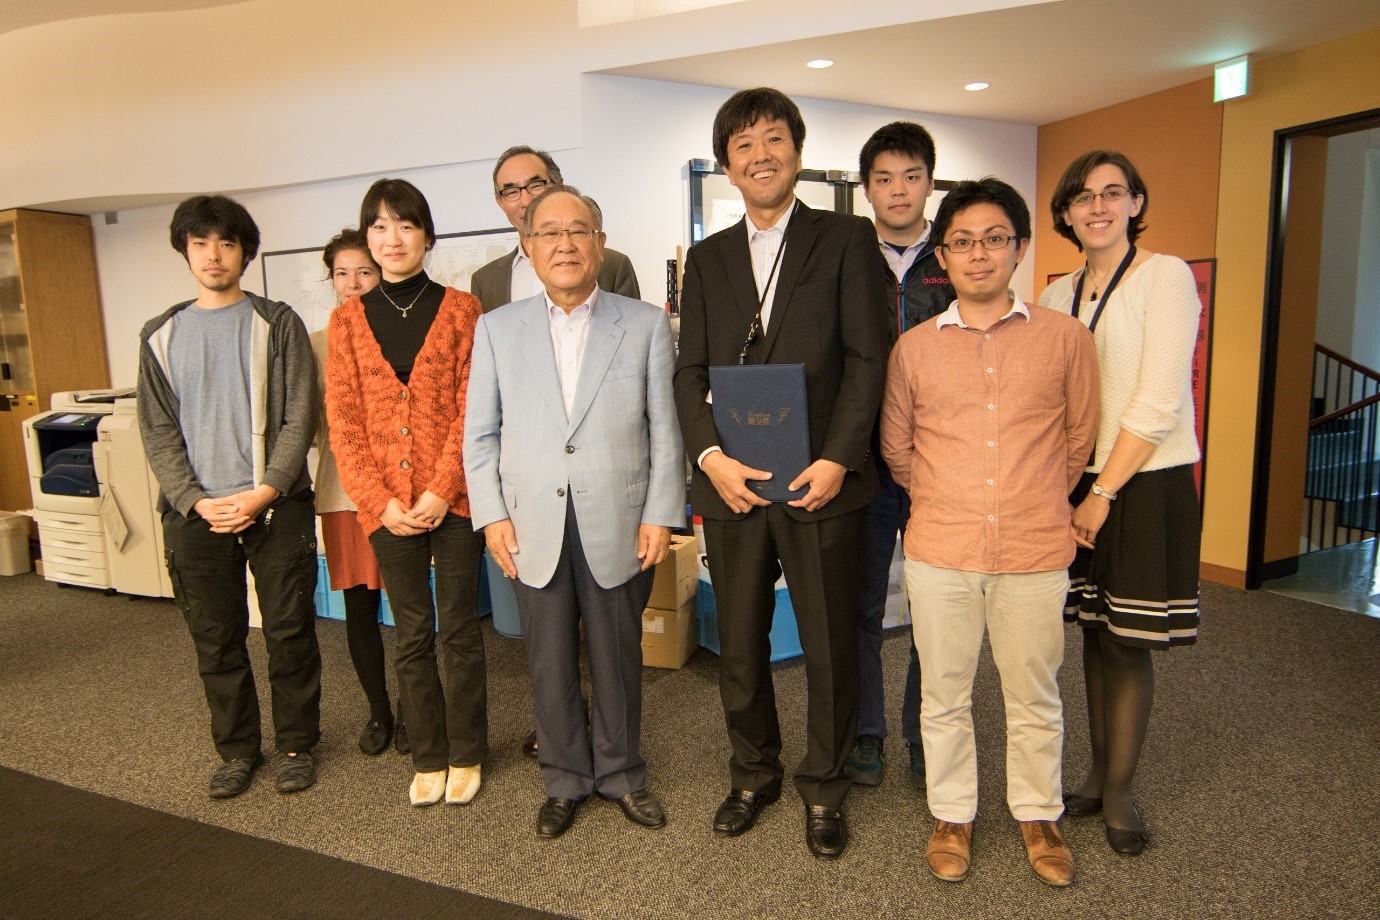 キャノンの御手洗冨士夫会長兼最高経営責任者（CEO）（写真中央）とOIST海洋生態物理学ユニットのメンバー。